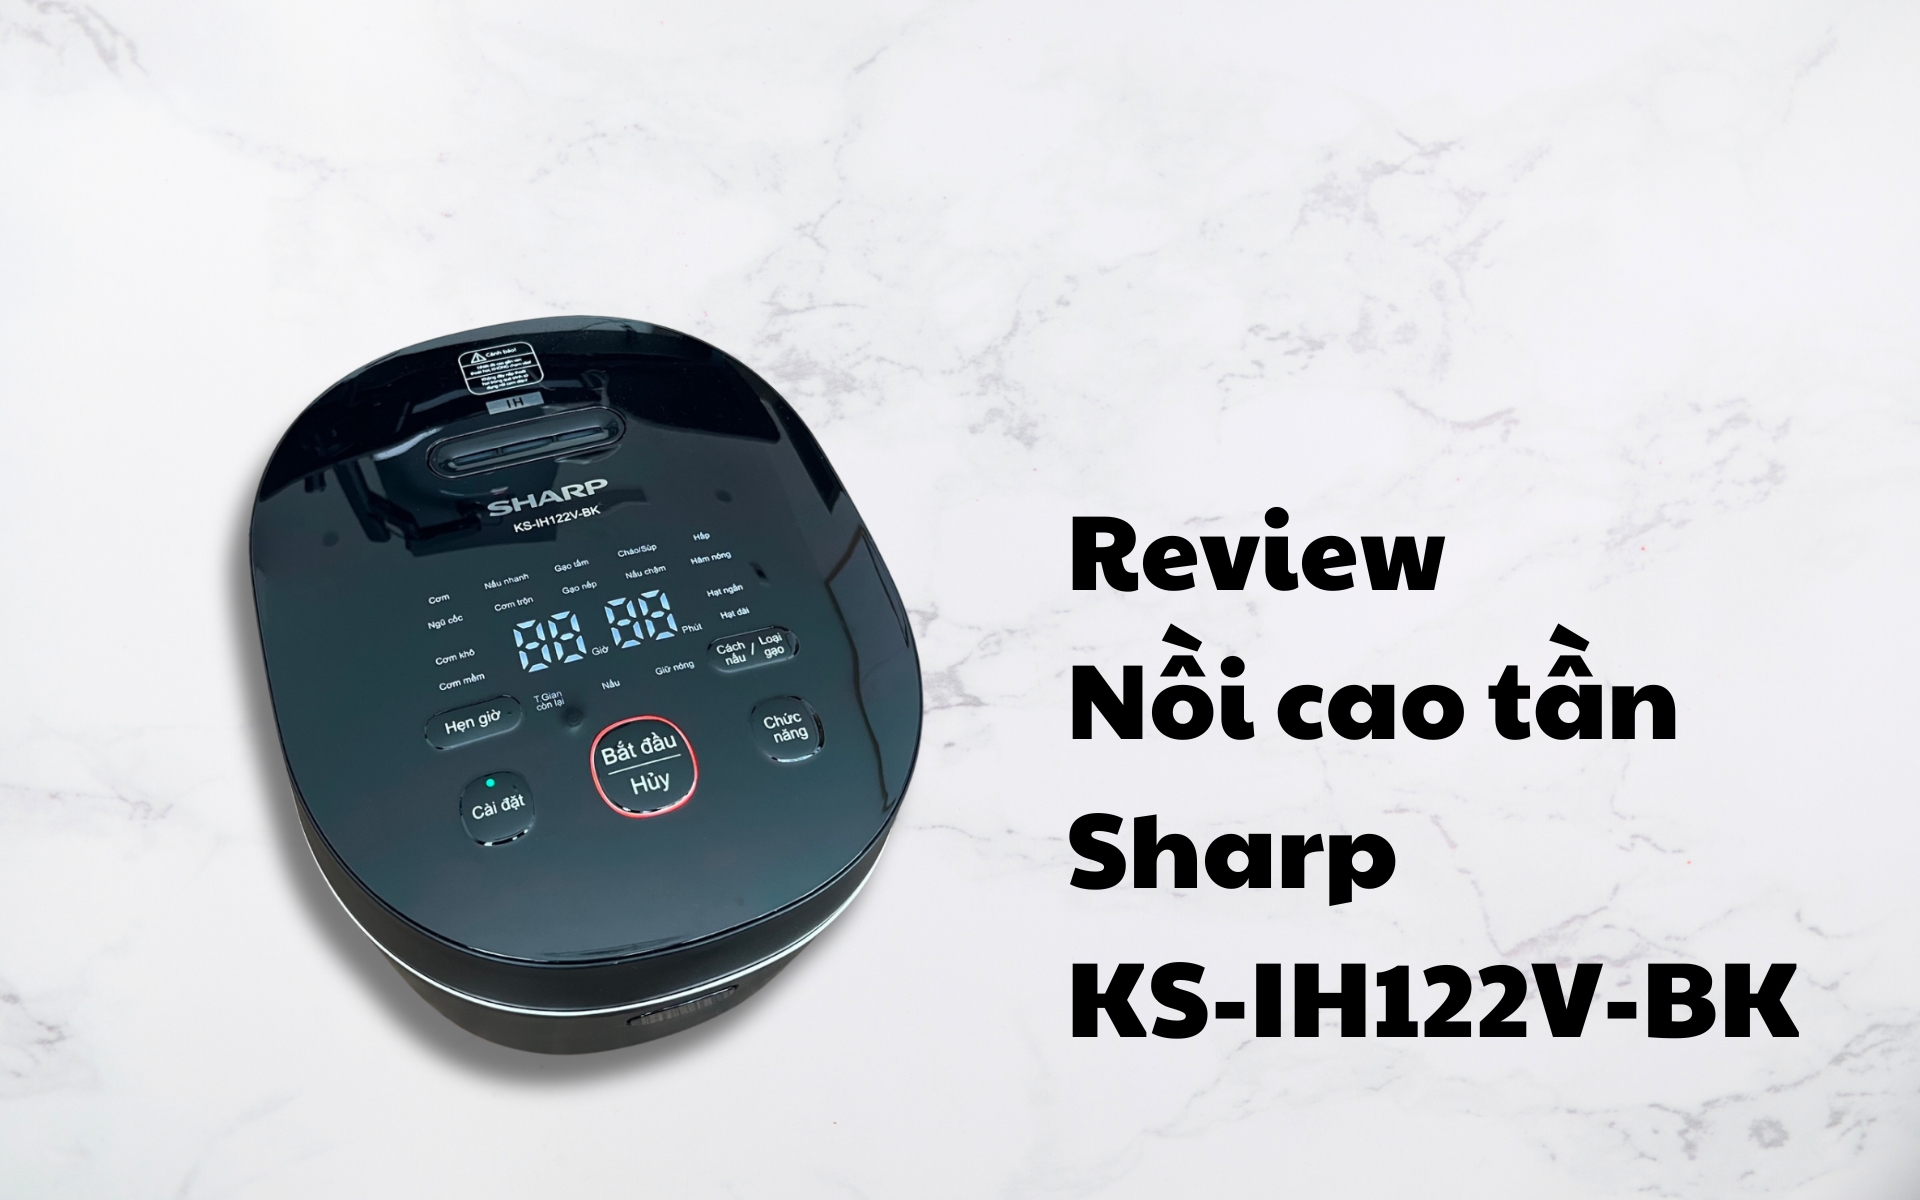 Review nồi cao tần Sharp KS-IH122V-BK